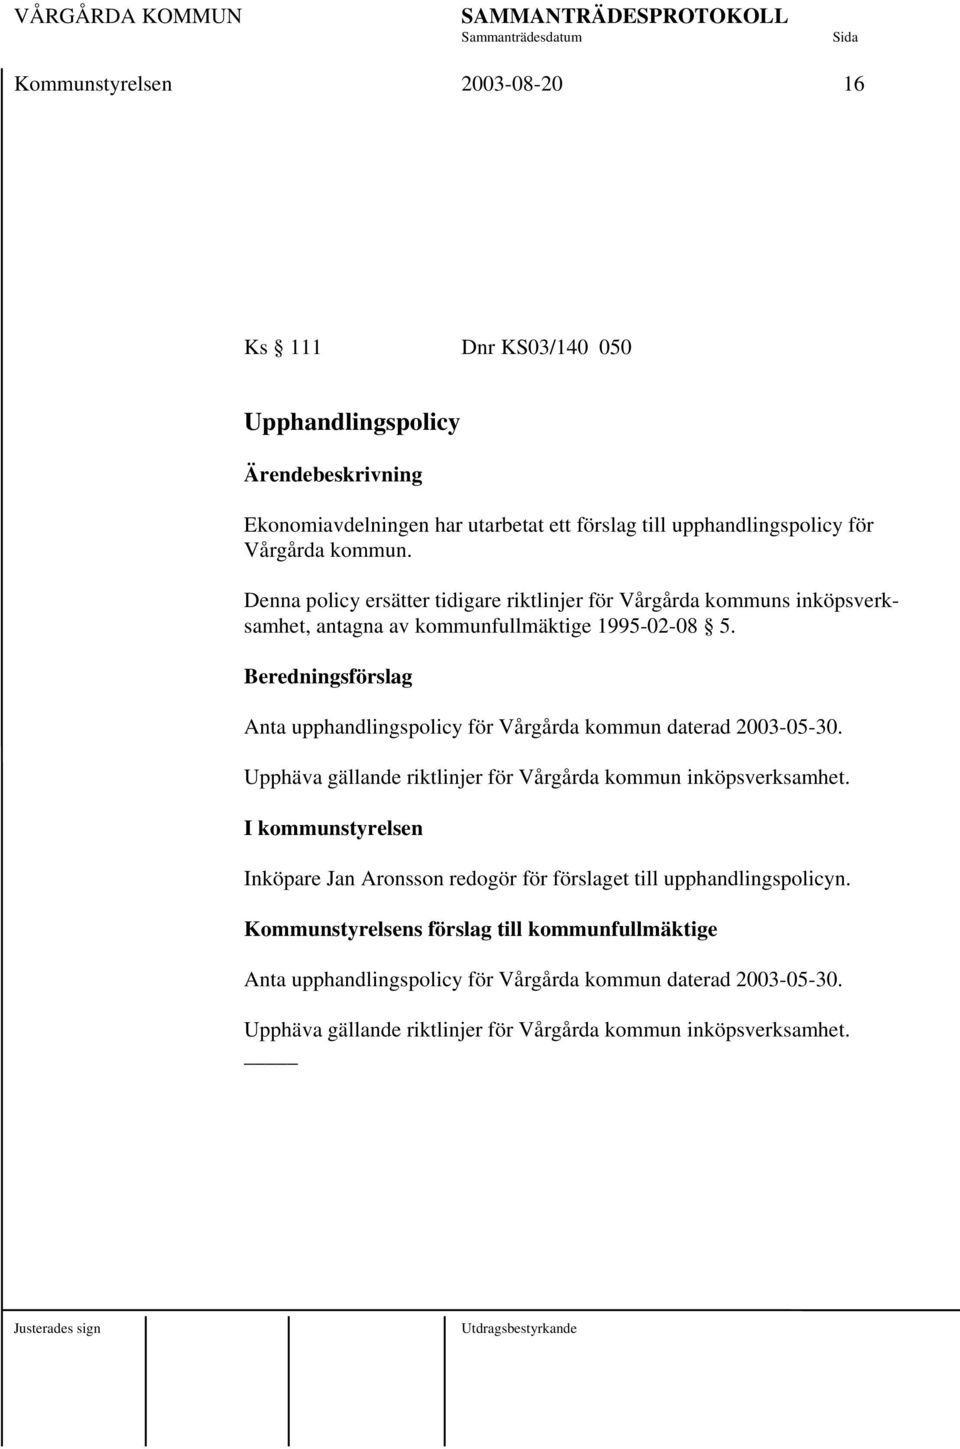 Beredningsförslag Anta upphandlingspolicy för Vårgårda kommun daterad 2003-05-30. Upphäva gällande riktlinjer för Vårgårda kommun inköpsverksamhet.